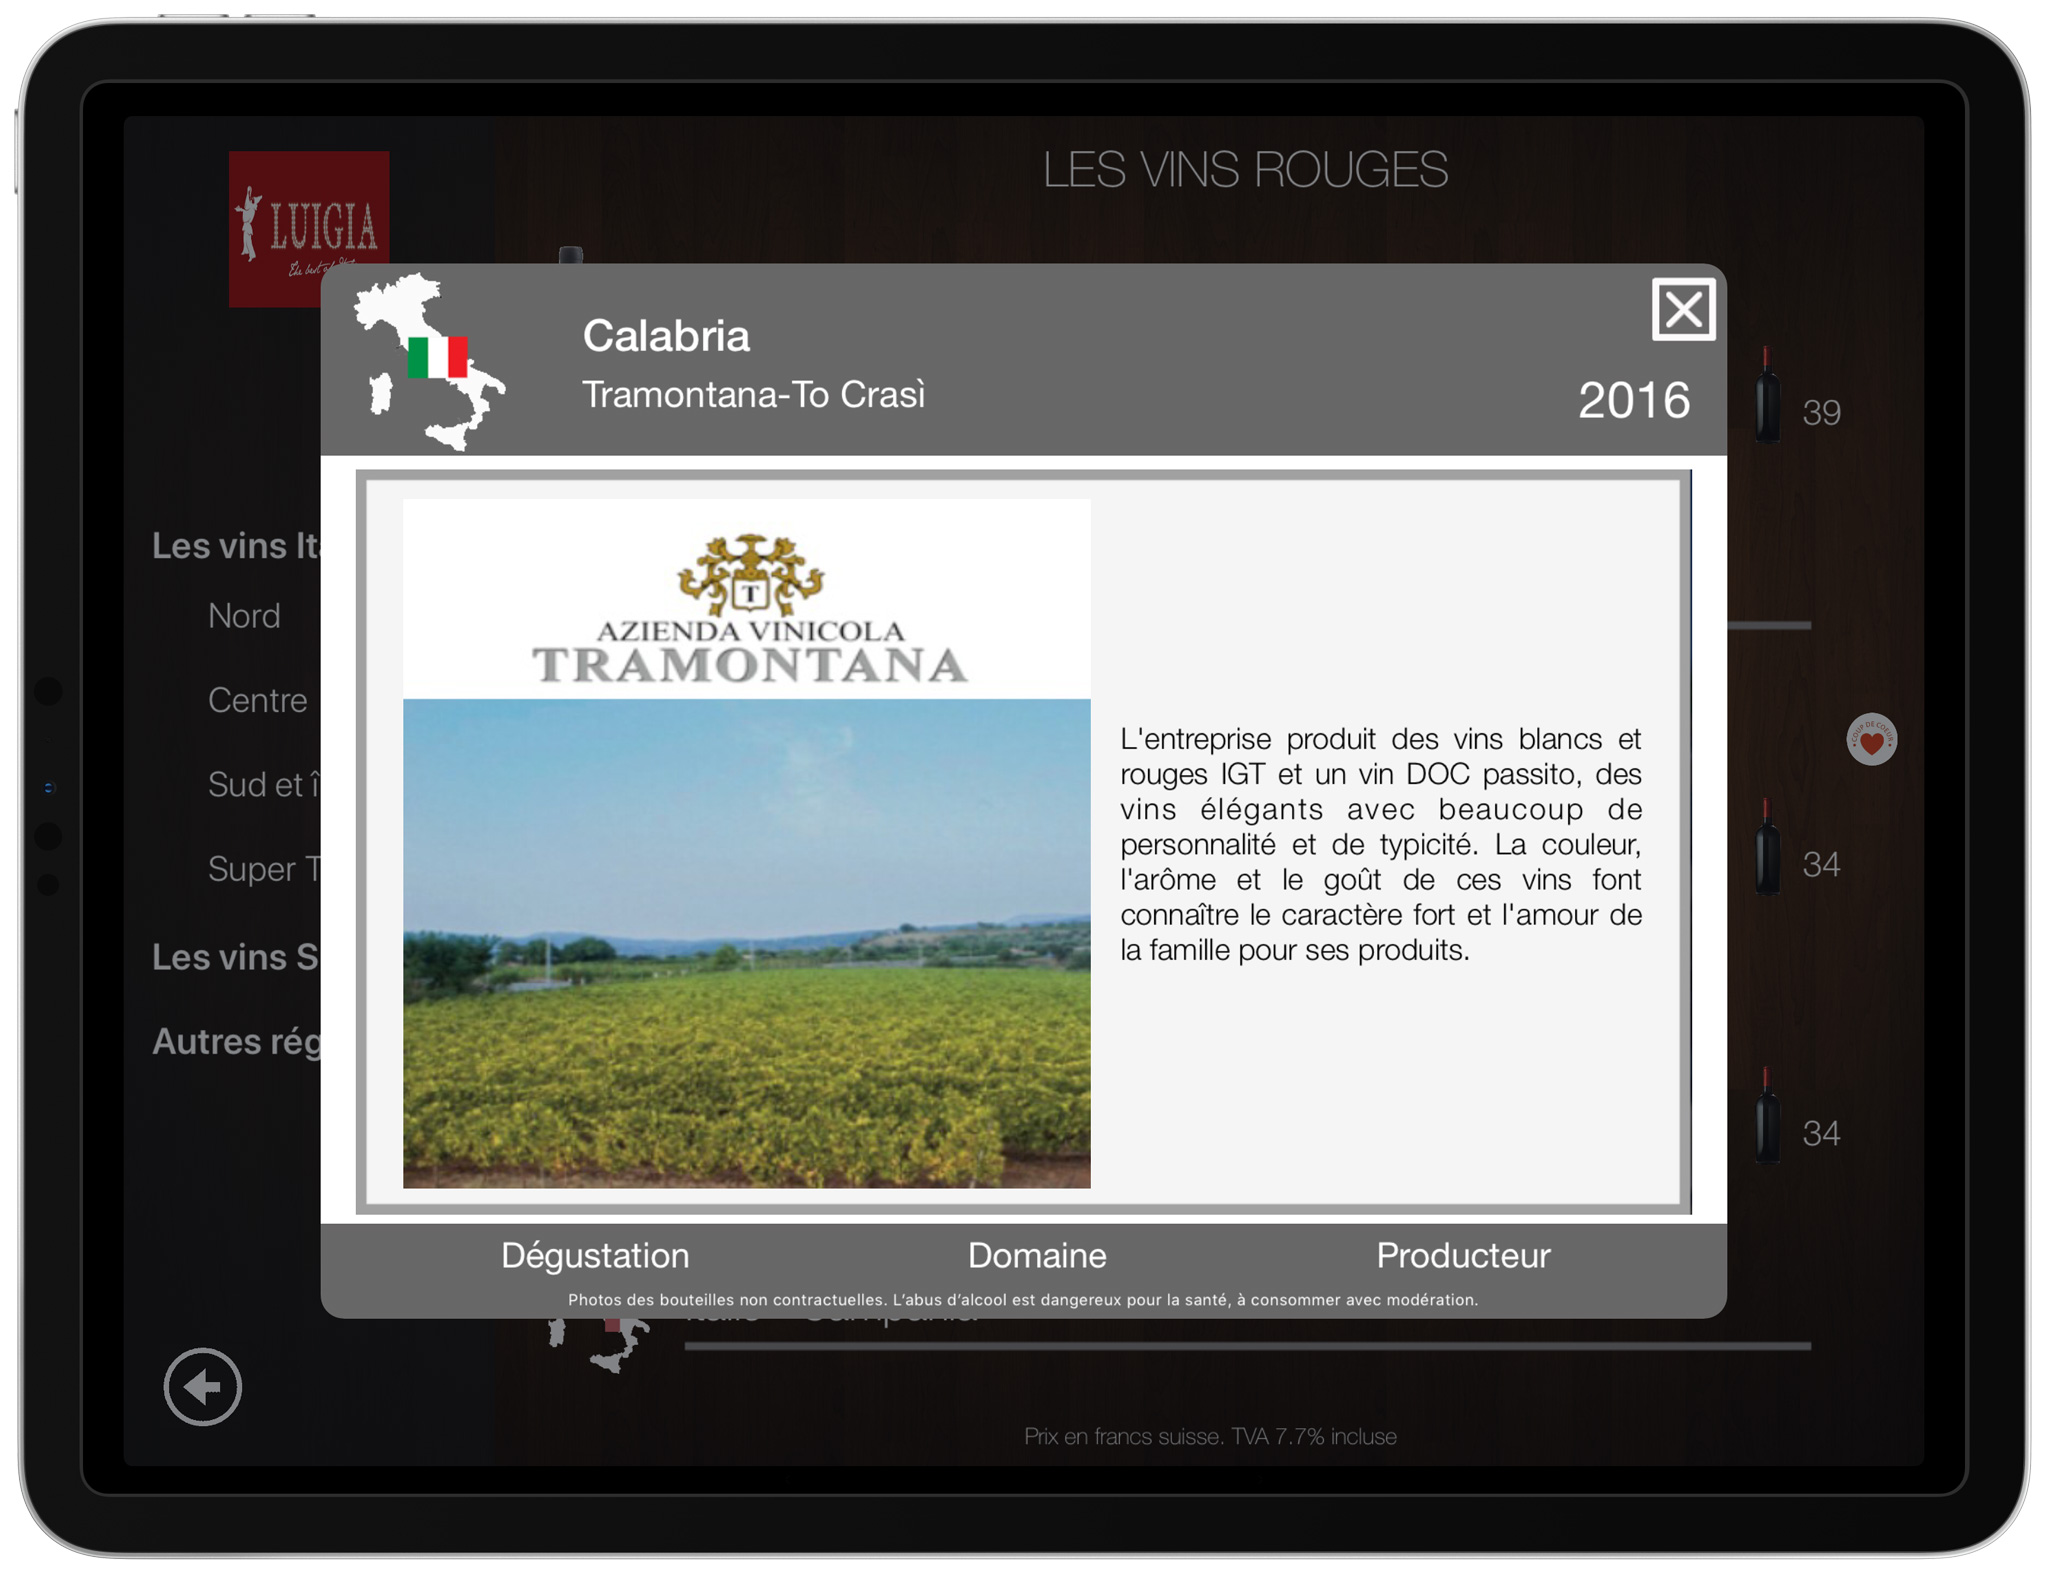 Description du domaine viticole carte des vins iPad numérique